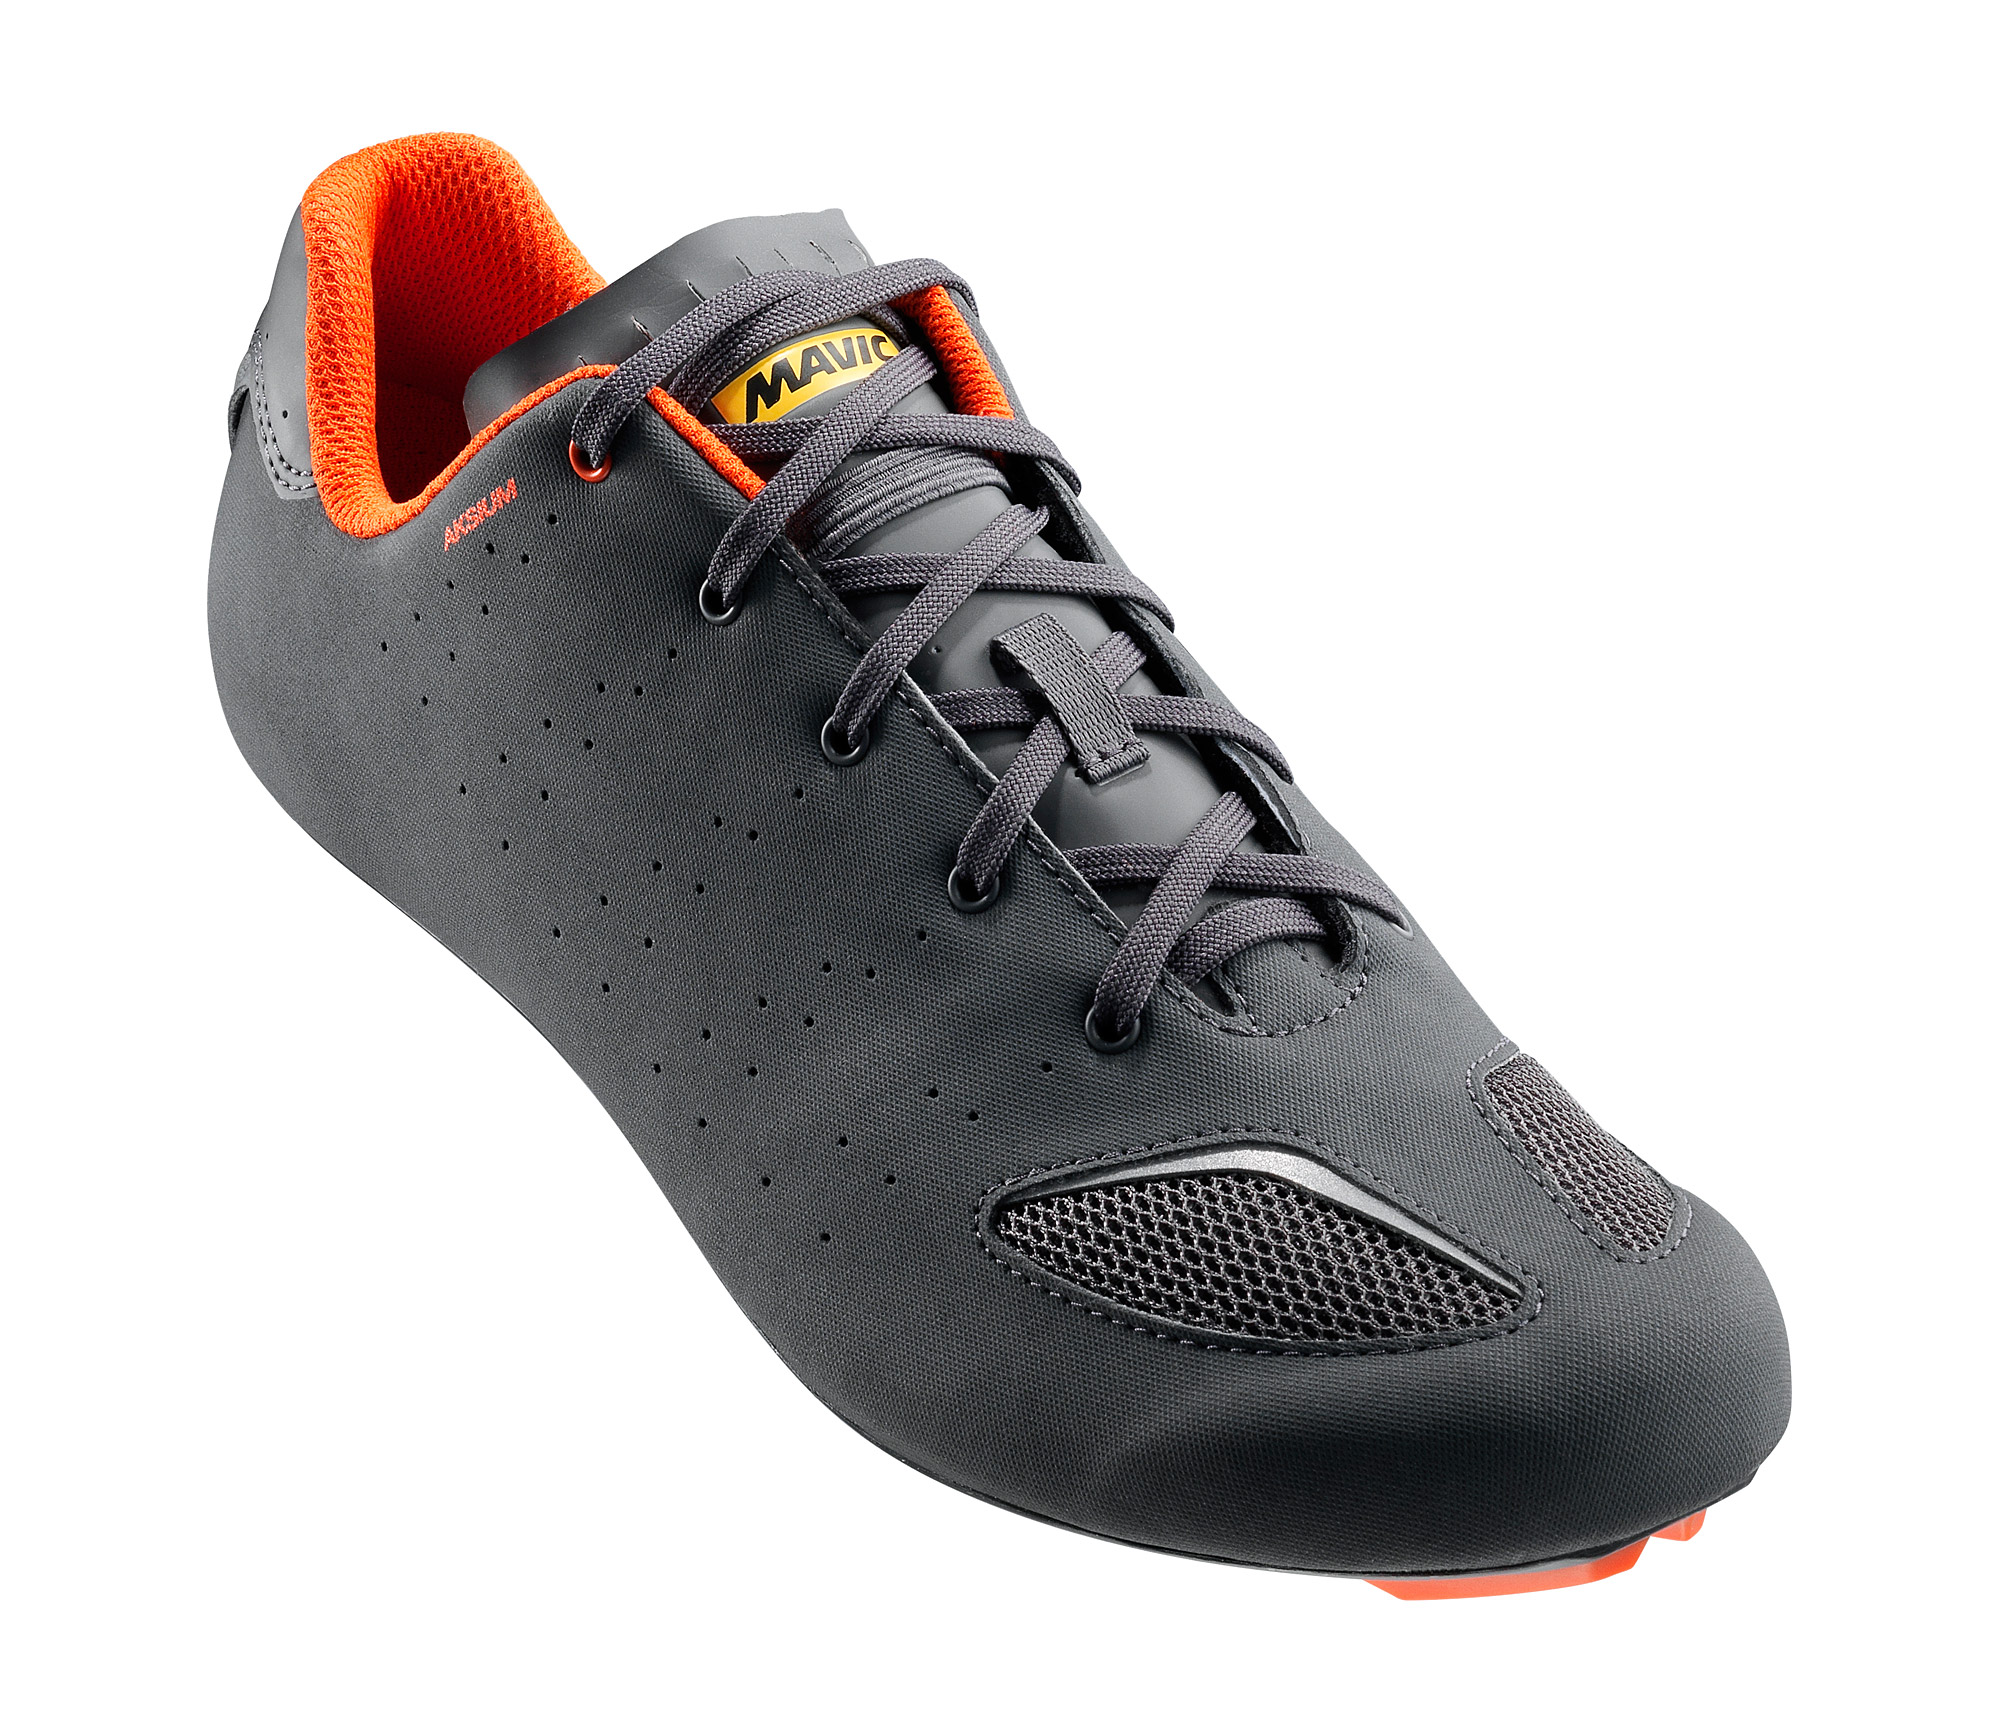 Обувь Mavic AKSIUM III, размер UK 7 (40 2/3, 257мм) Asphalt/Orange серо-оранжевая